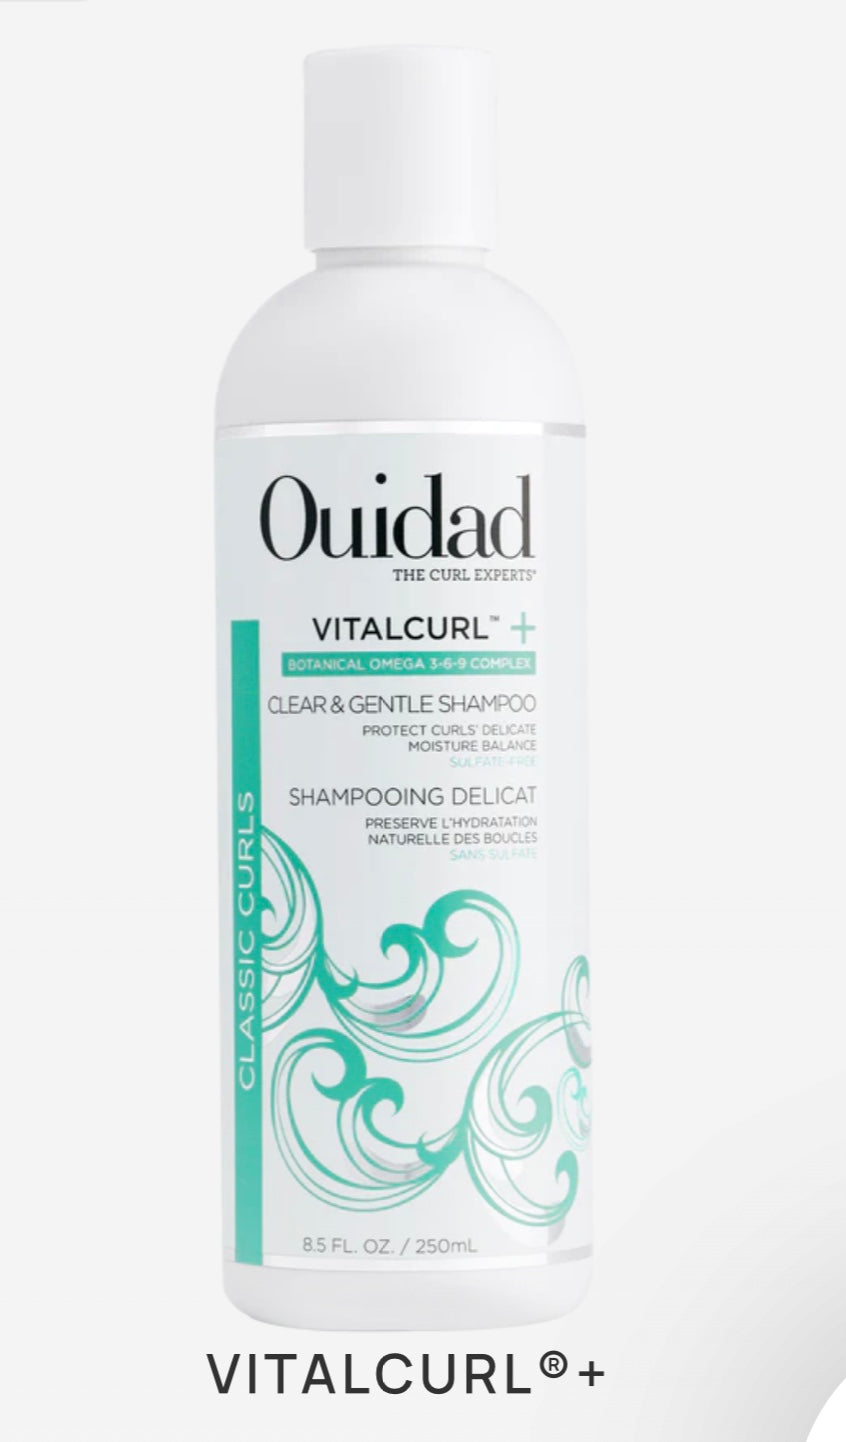 Ouidad - Vitalcurl + Clear & gentle shampoo 8.5 fl. oz./ 250 ml